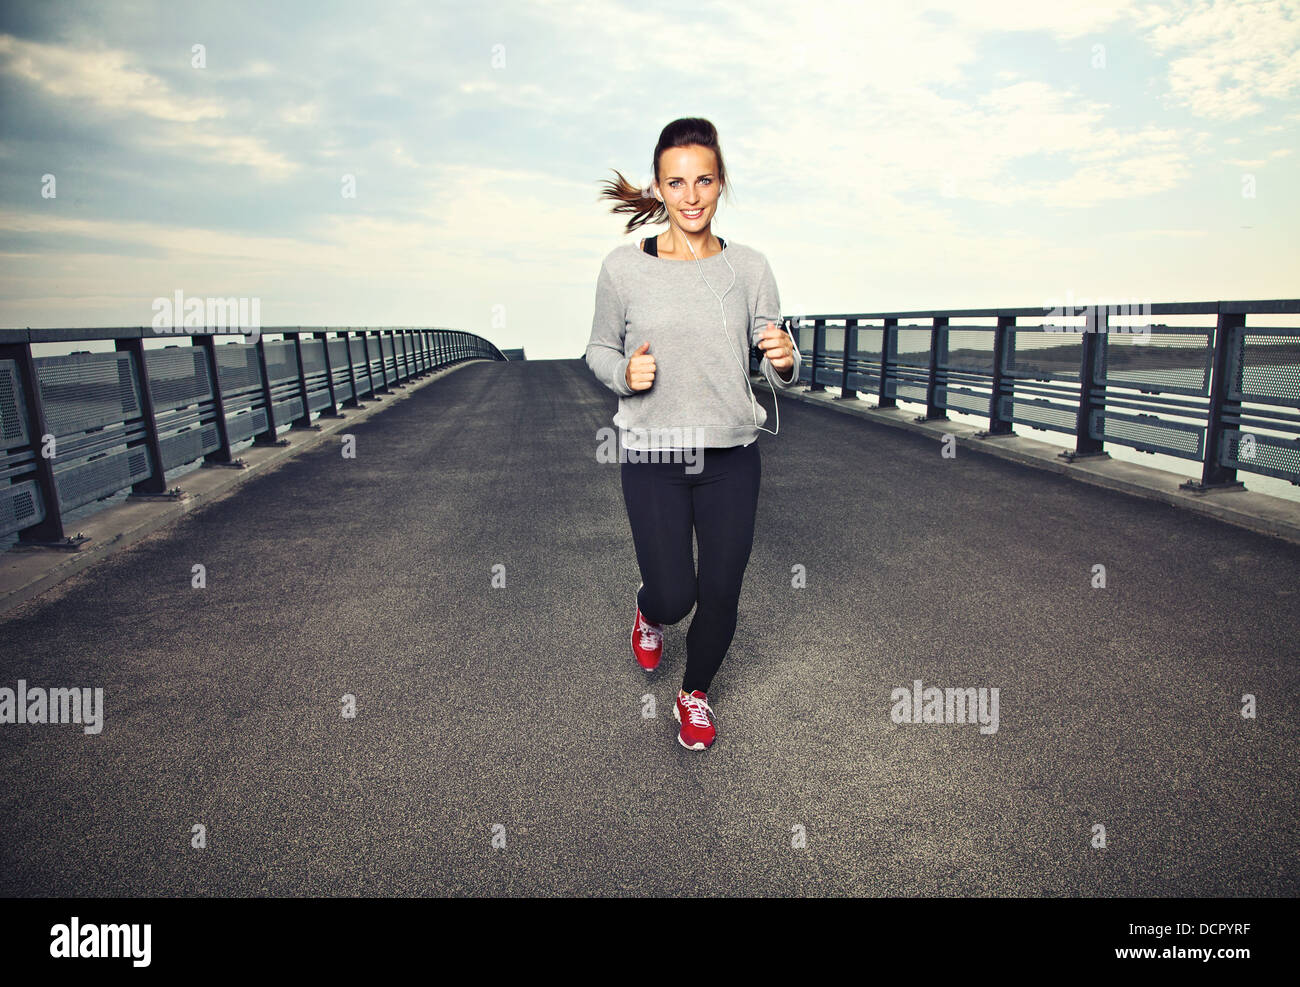 Female runner faisant de l'exercice en cours Banque D'Images